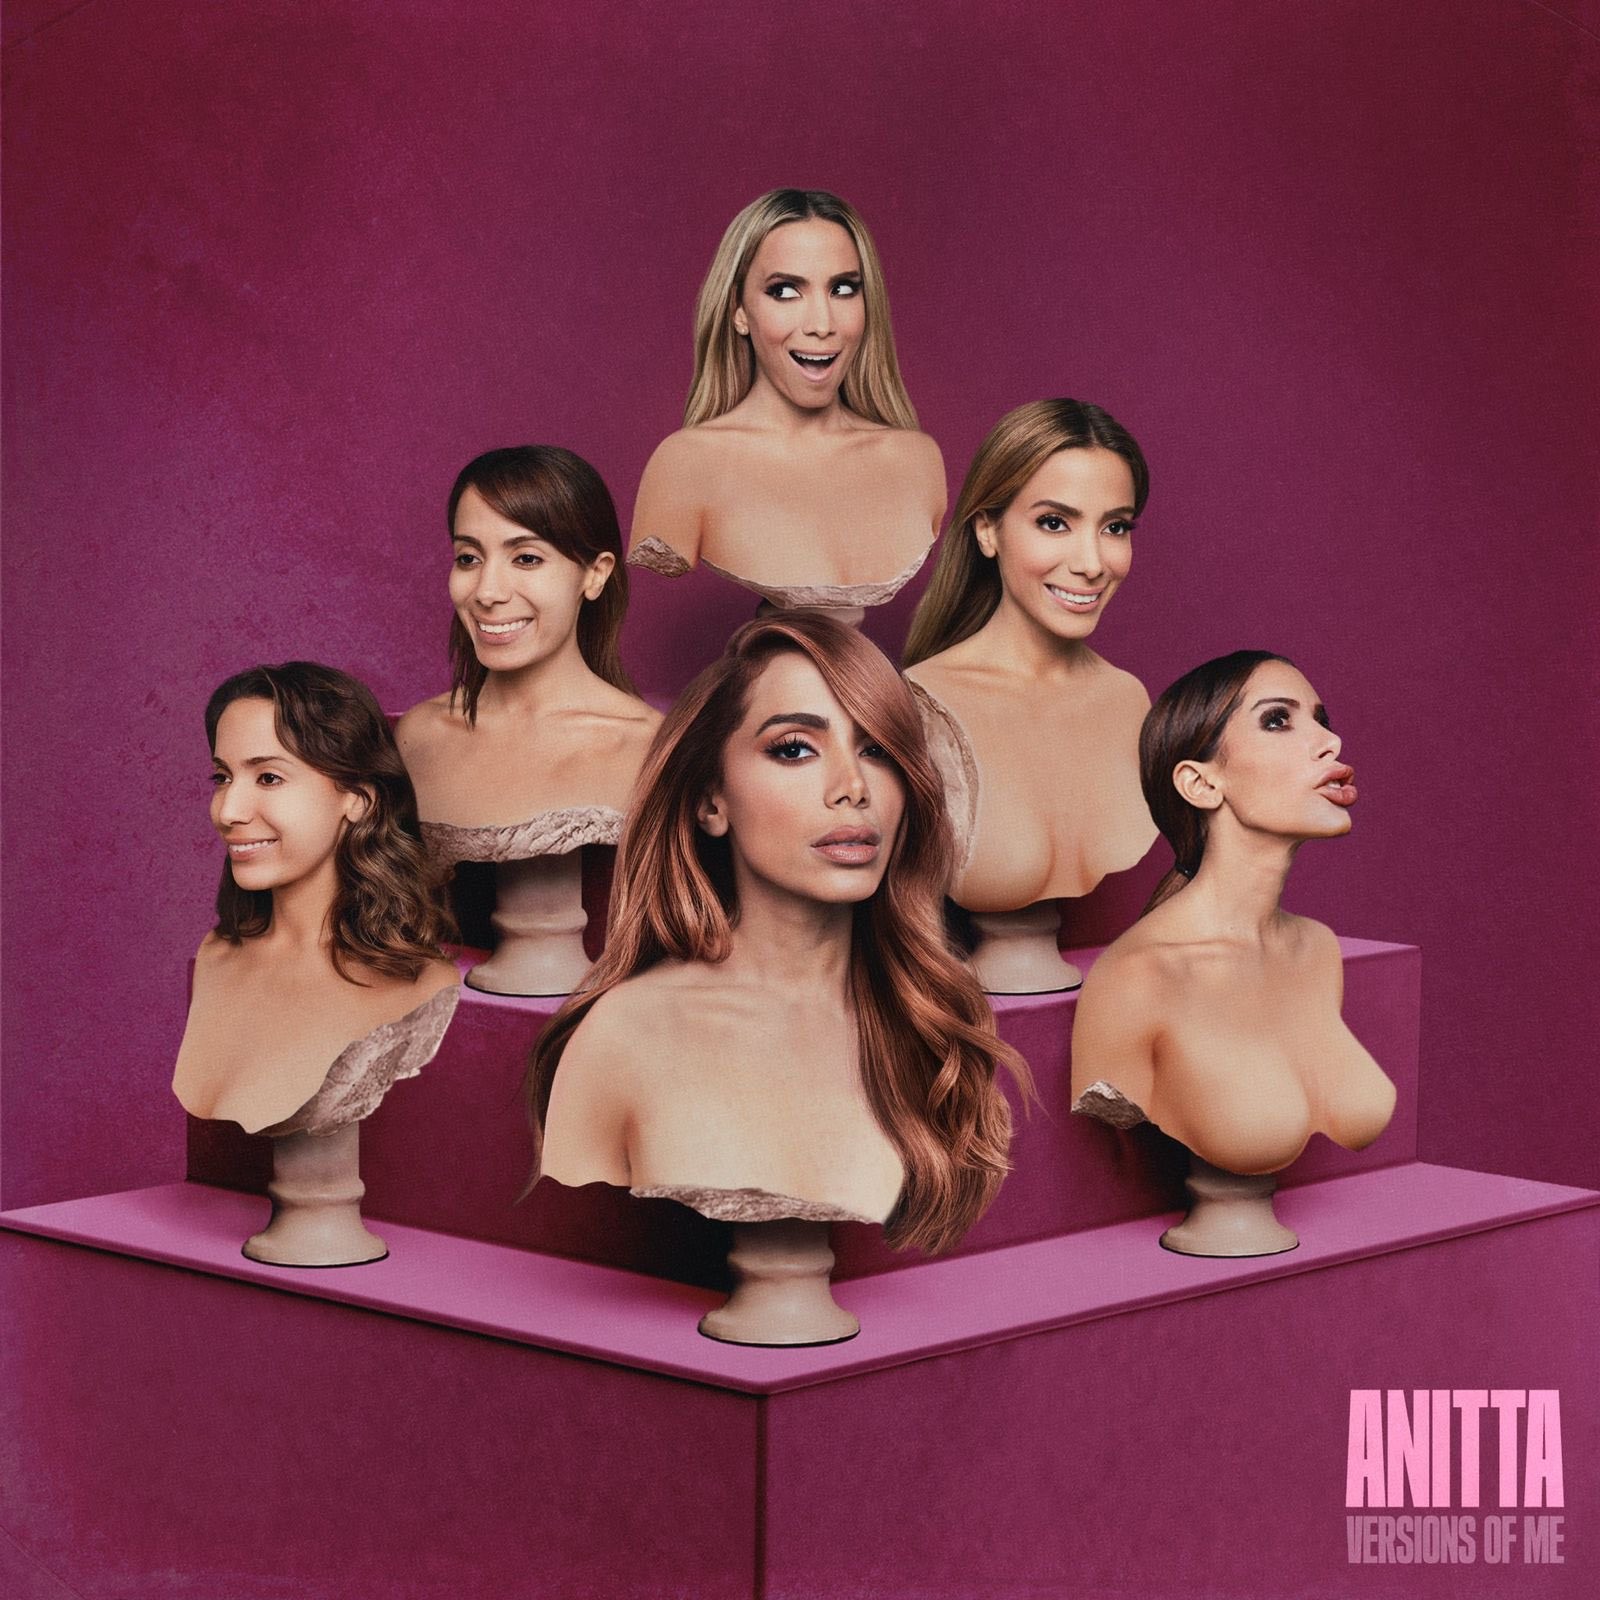 Versions Of Me de Anitta alcançou a 44ª posição do ITunes US (Foto: Reprodução )